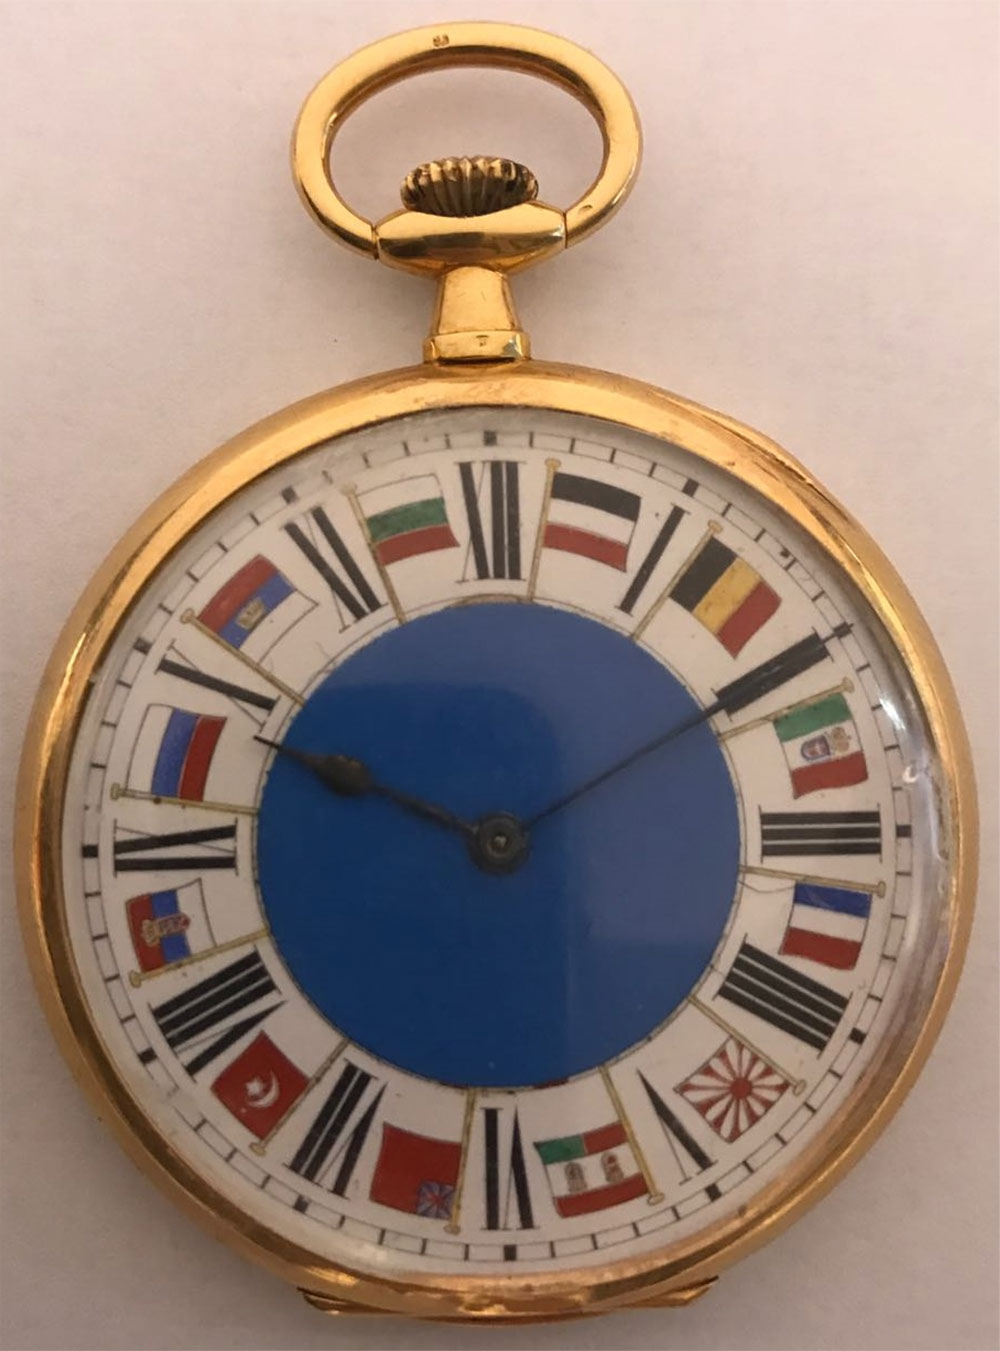 el reloj de bolsillo INVAR fabricado por petición expresa de la Casa Real para Alfonso XIII por la Compagnie des Montres la Chaux de Fonds (Suiza).